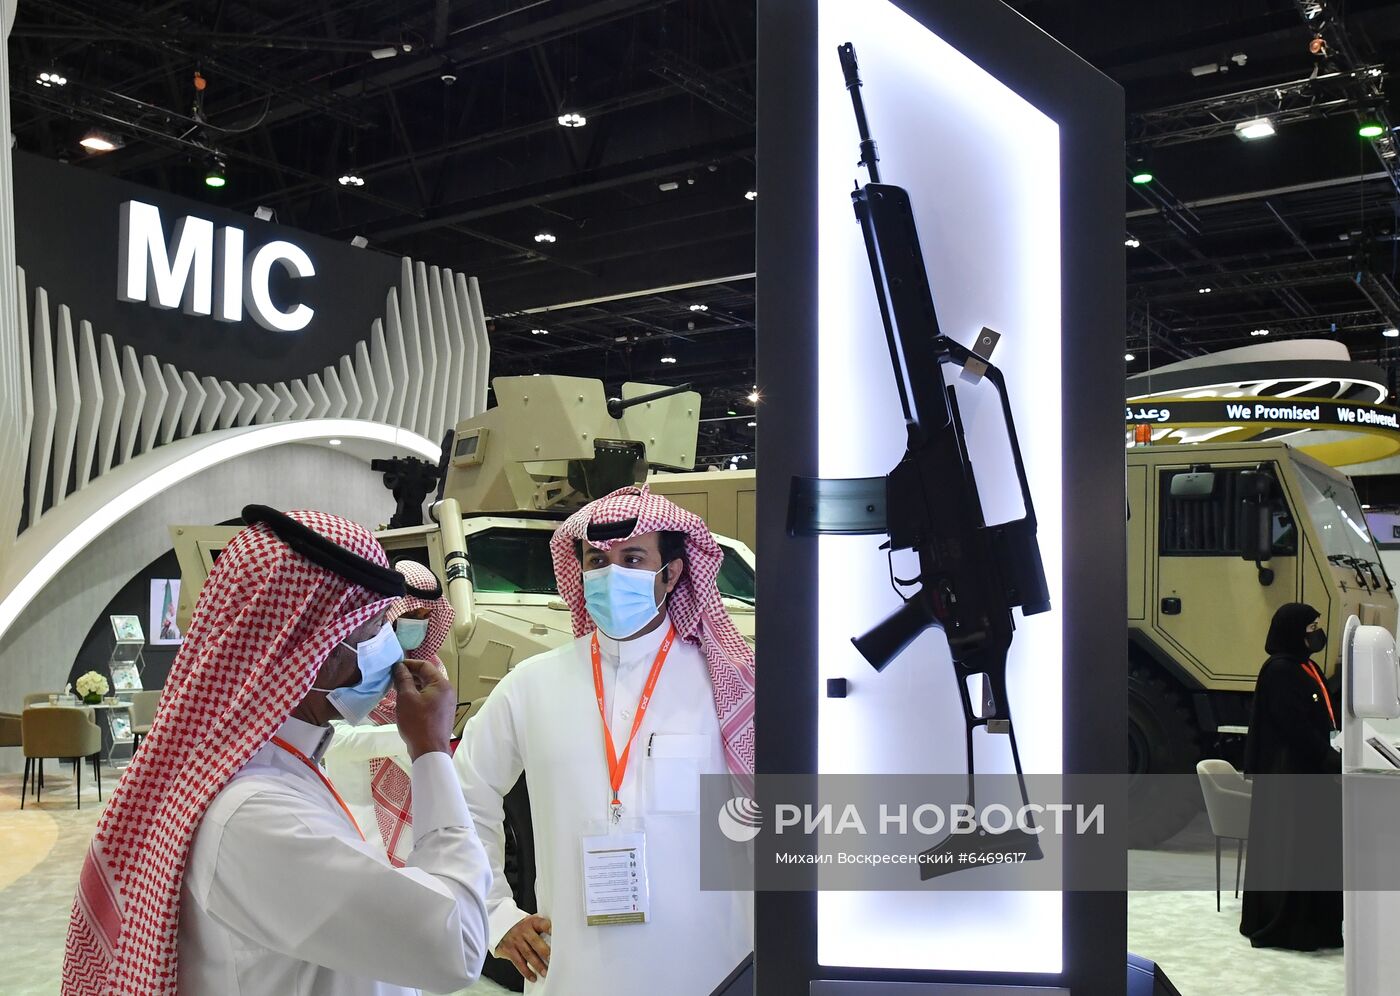 Выставка оборонной промышленности IDEX-2021 в Абу-Даби